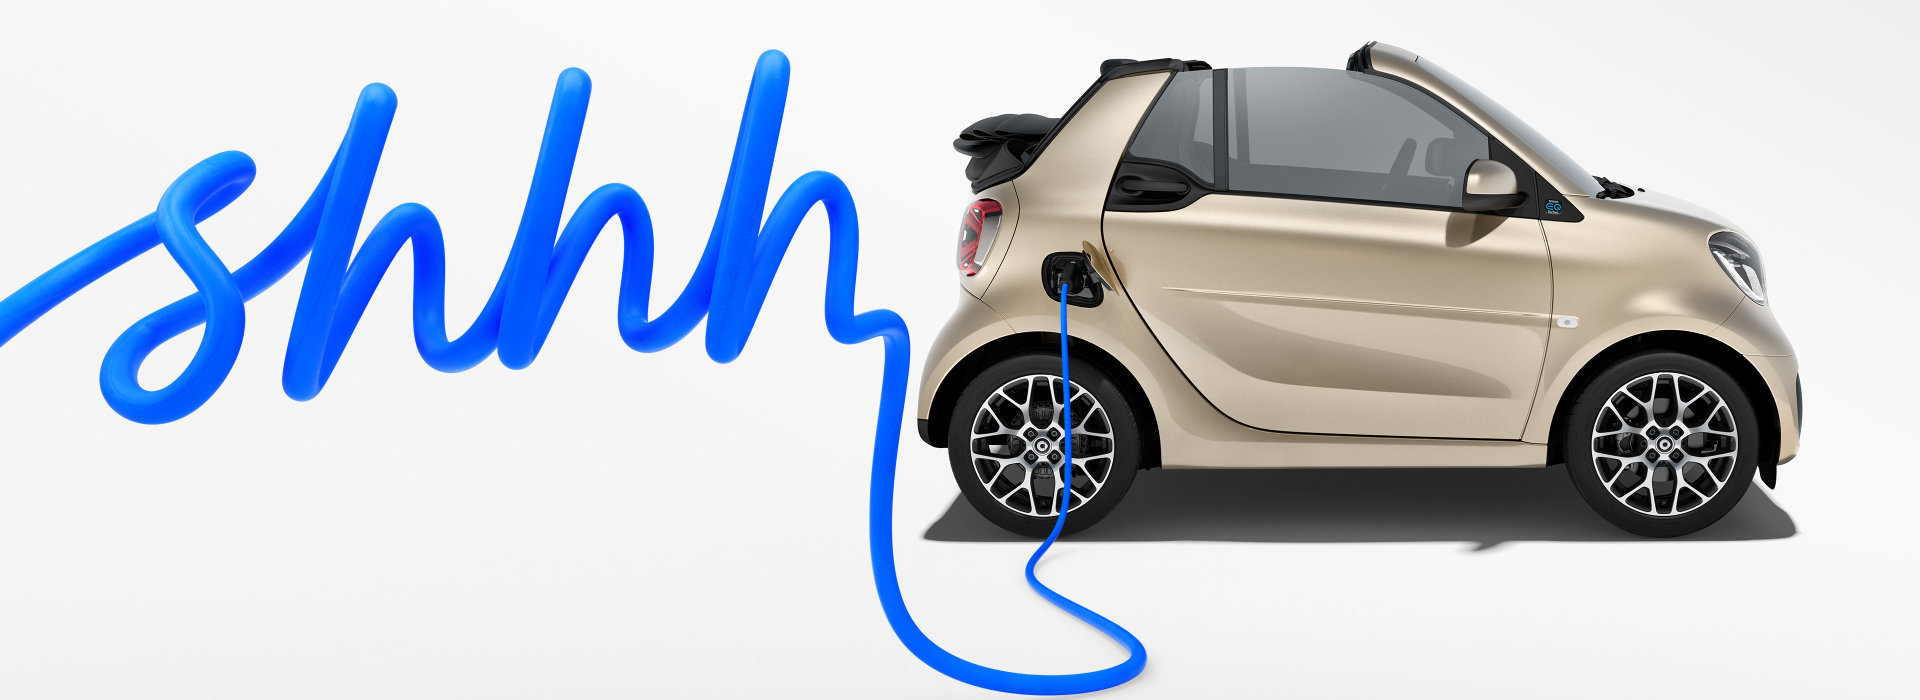 Smart Cabrio Imagebild shhh - leise